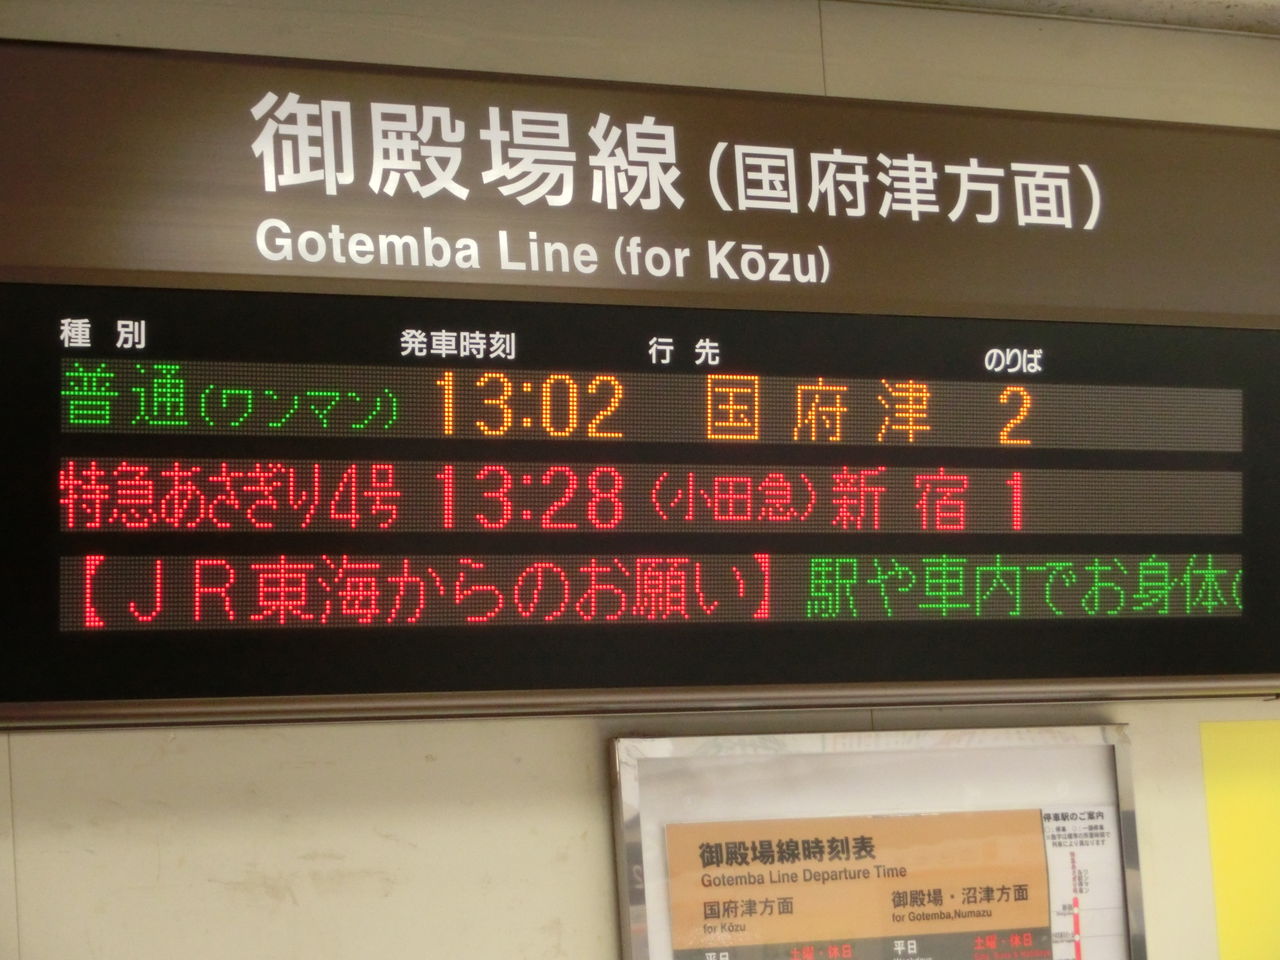 松田駅で普通 御殿場方面 三島行き の表示を撮る 18年3月 関西のjrへようこそ